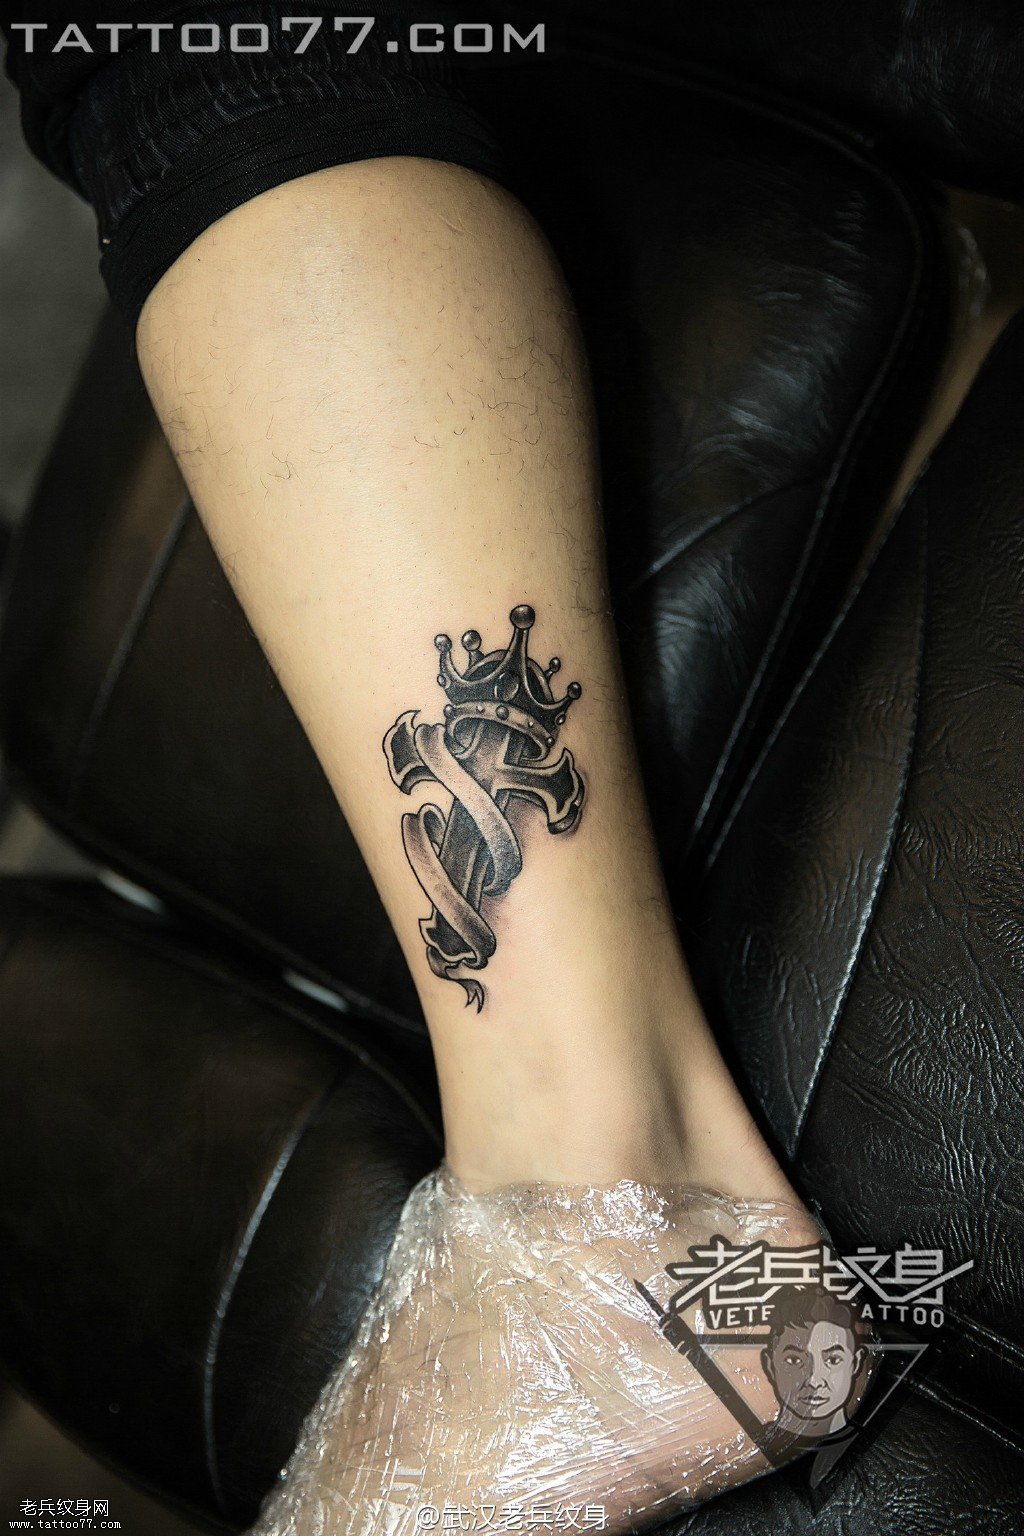 脚踝皇冠十字架纹身图案作品